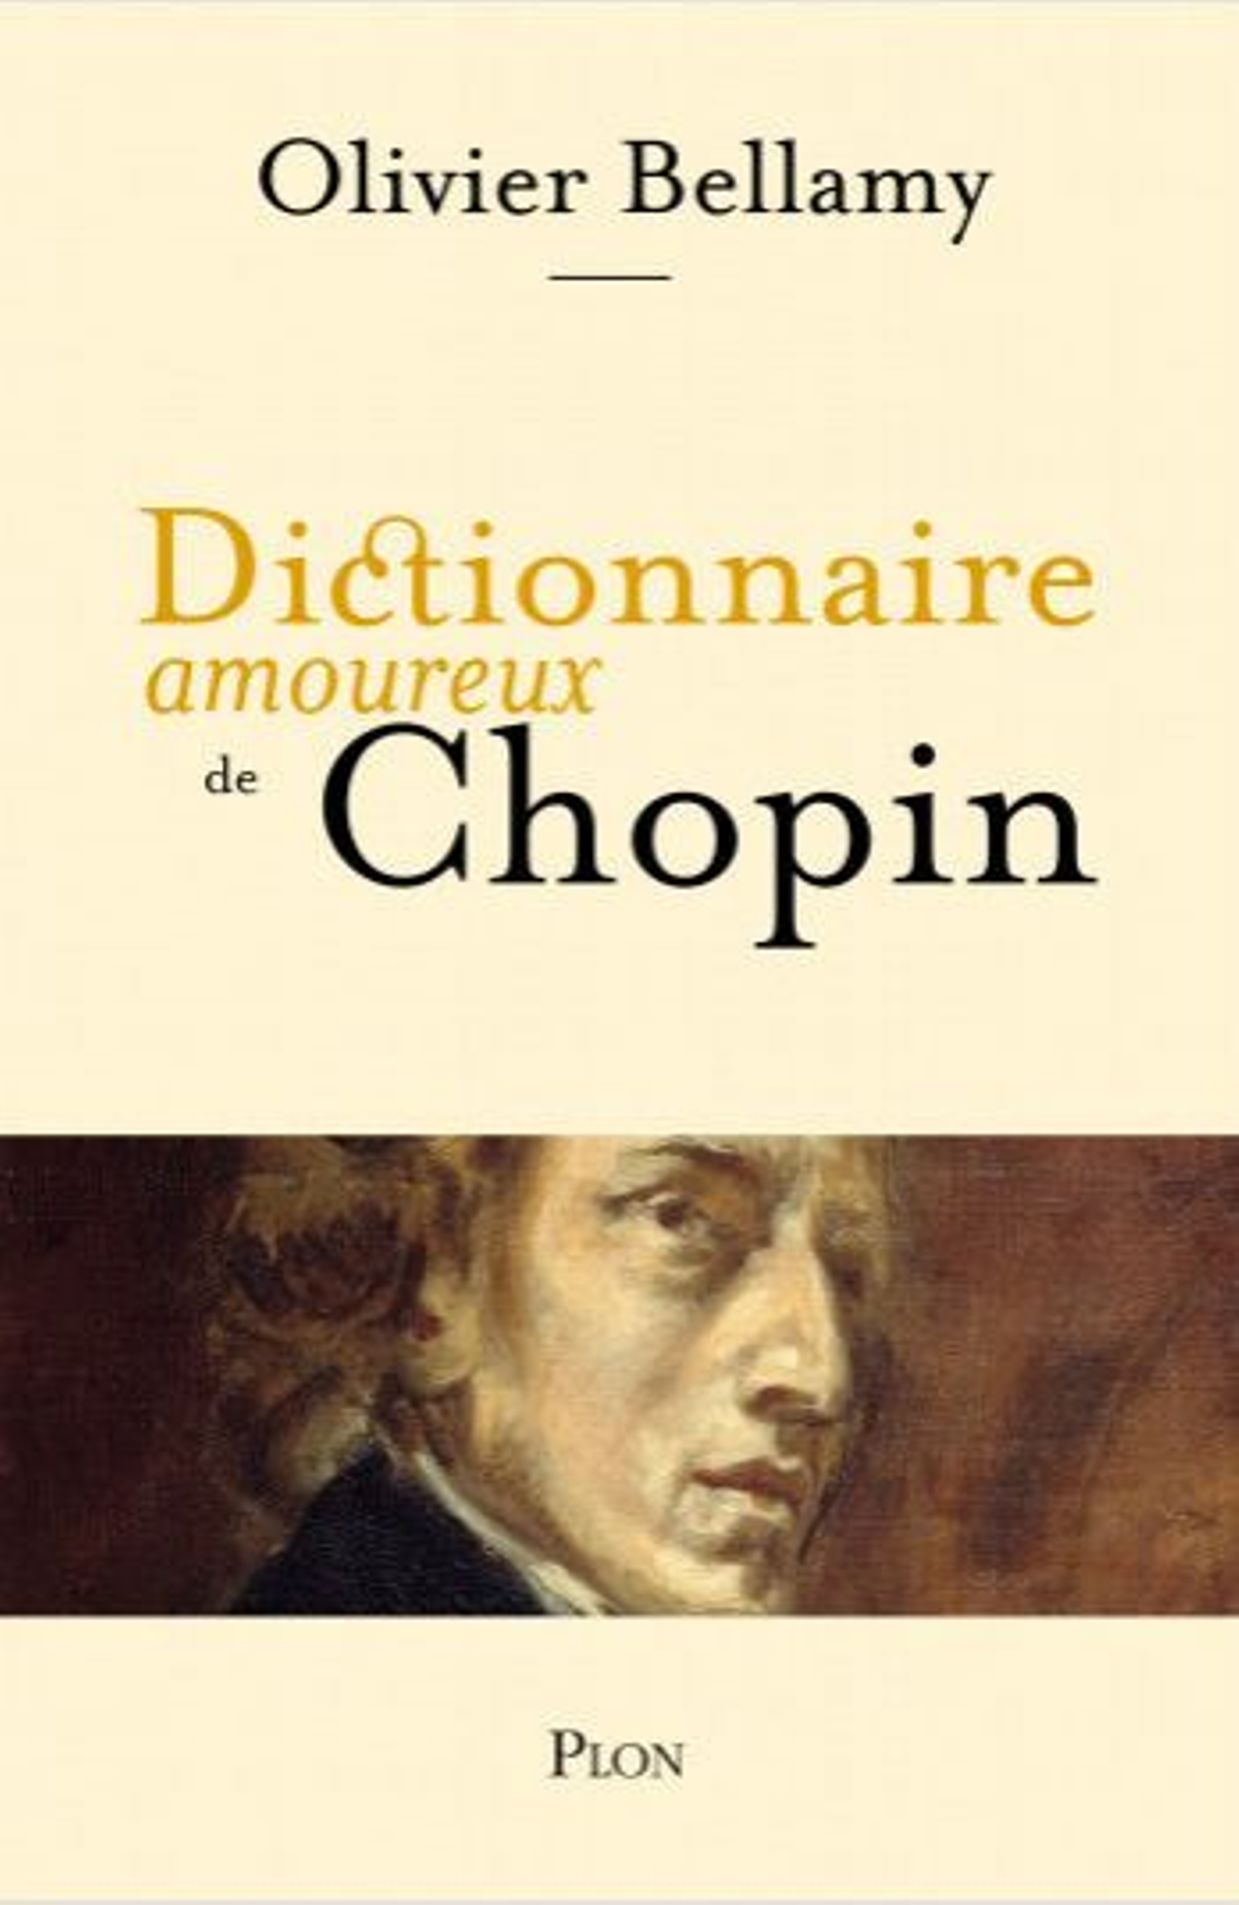 Olivier Bellamy, "Le dictionnaire amoureux de Chopin"